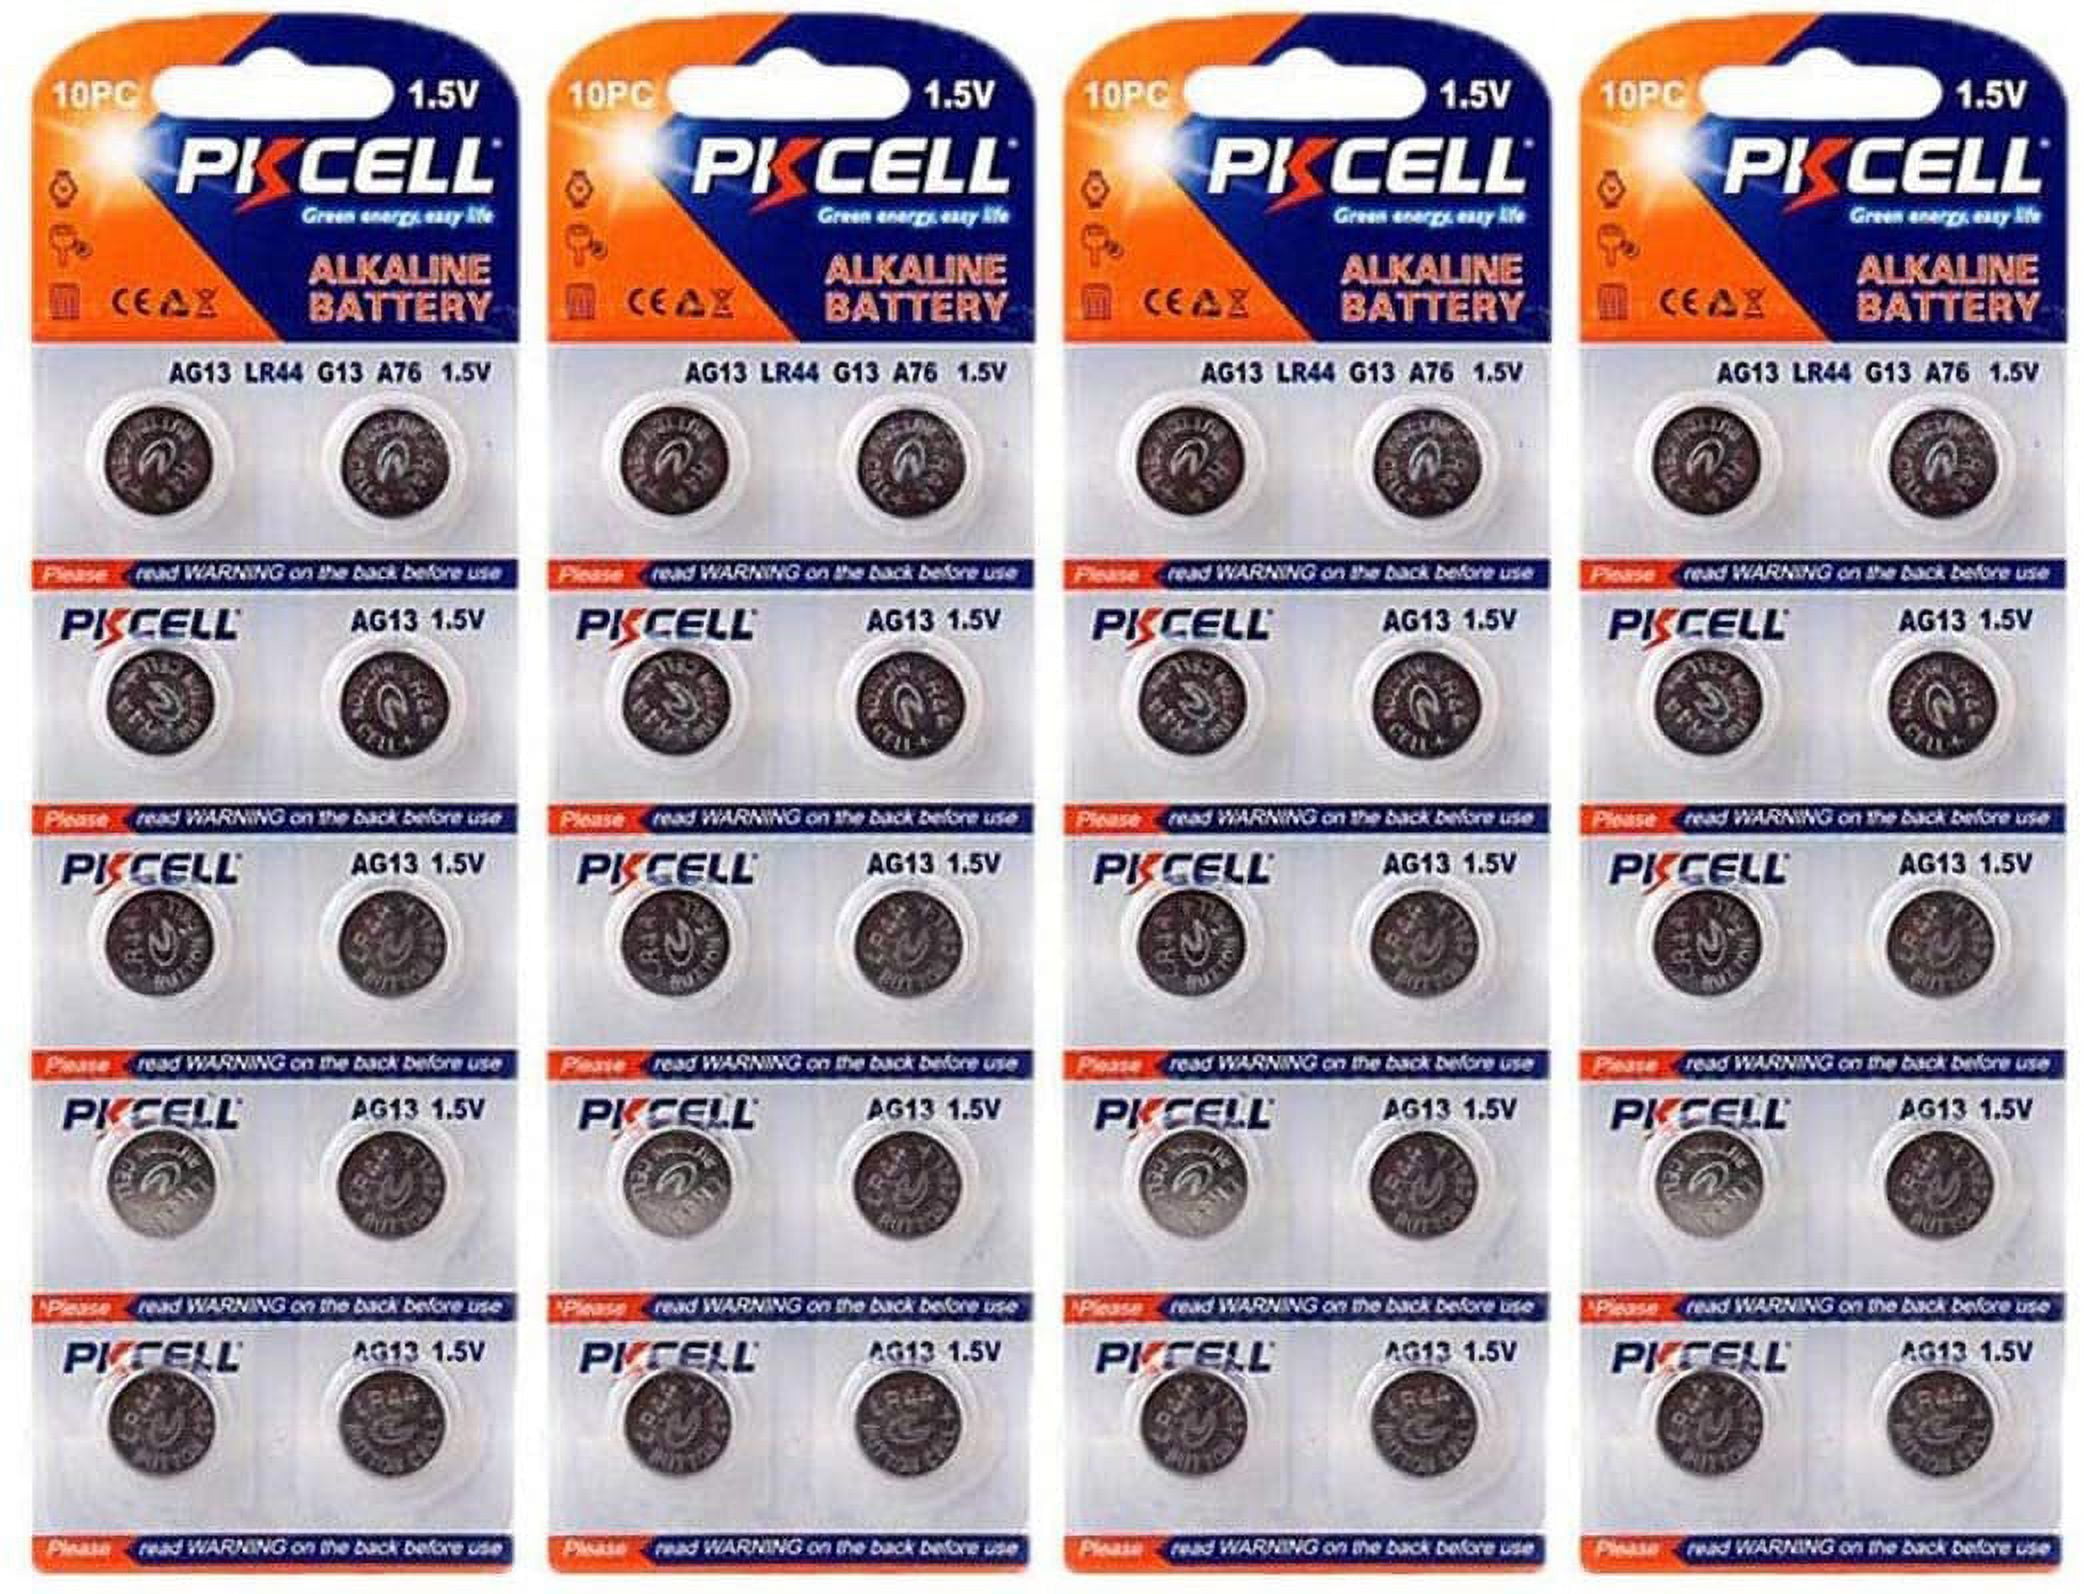 10pcs (1-card) AG13 / LR44 1.5V Alkaline Button Cells